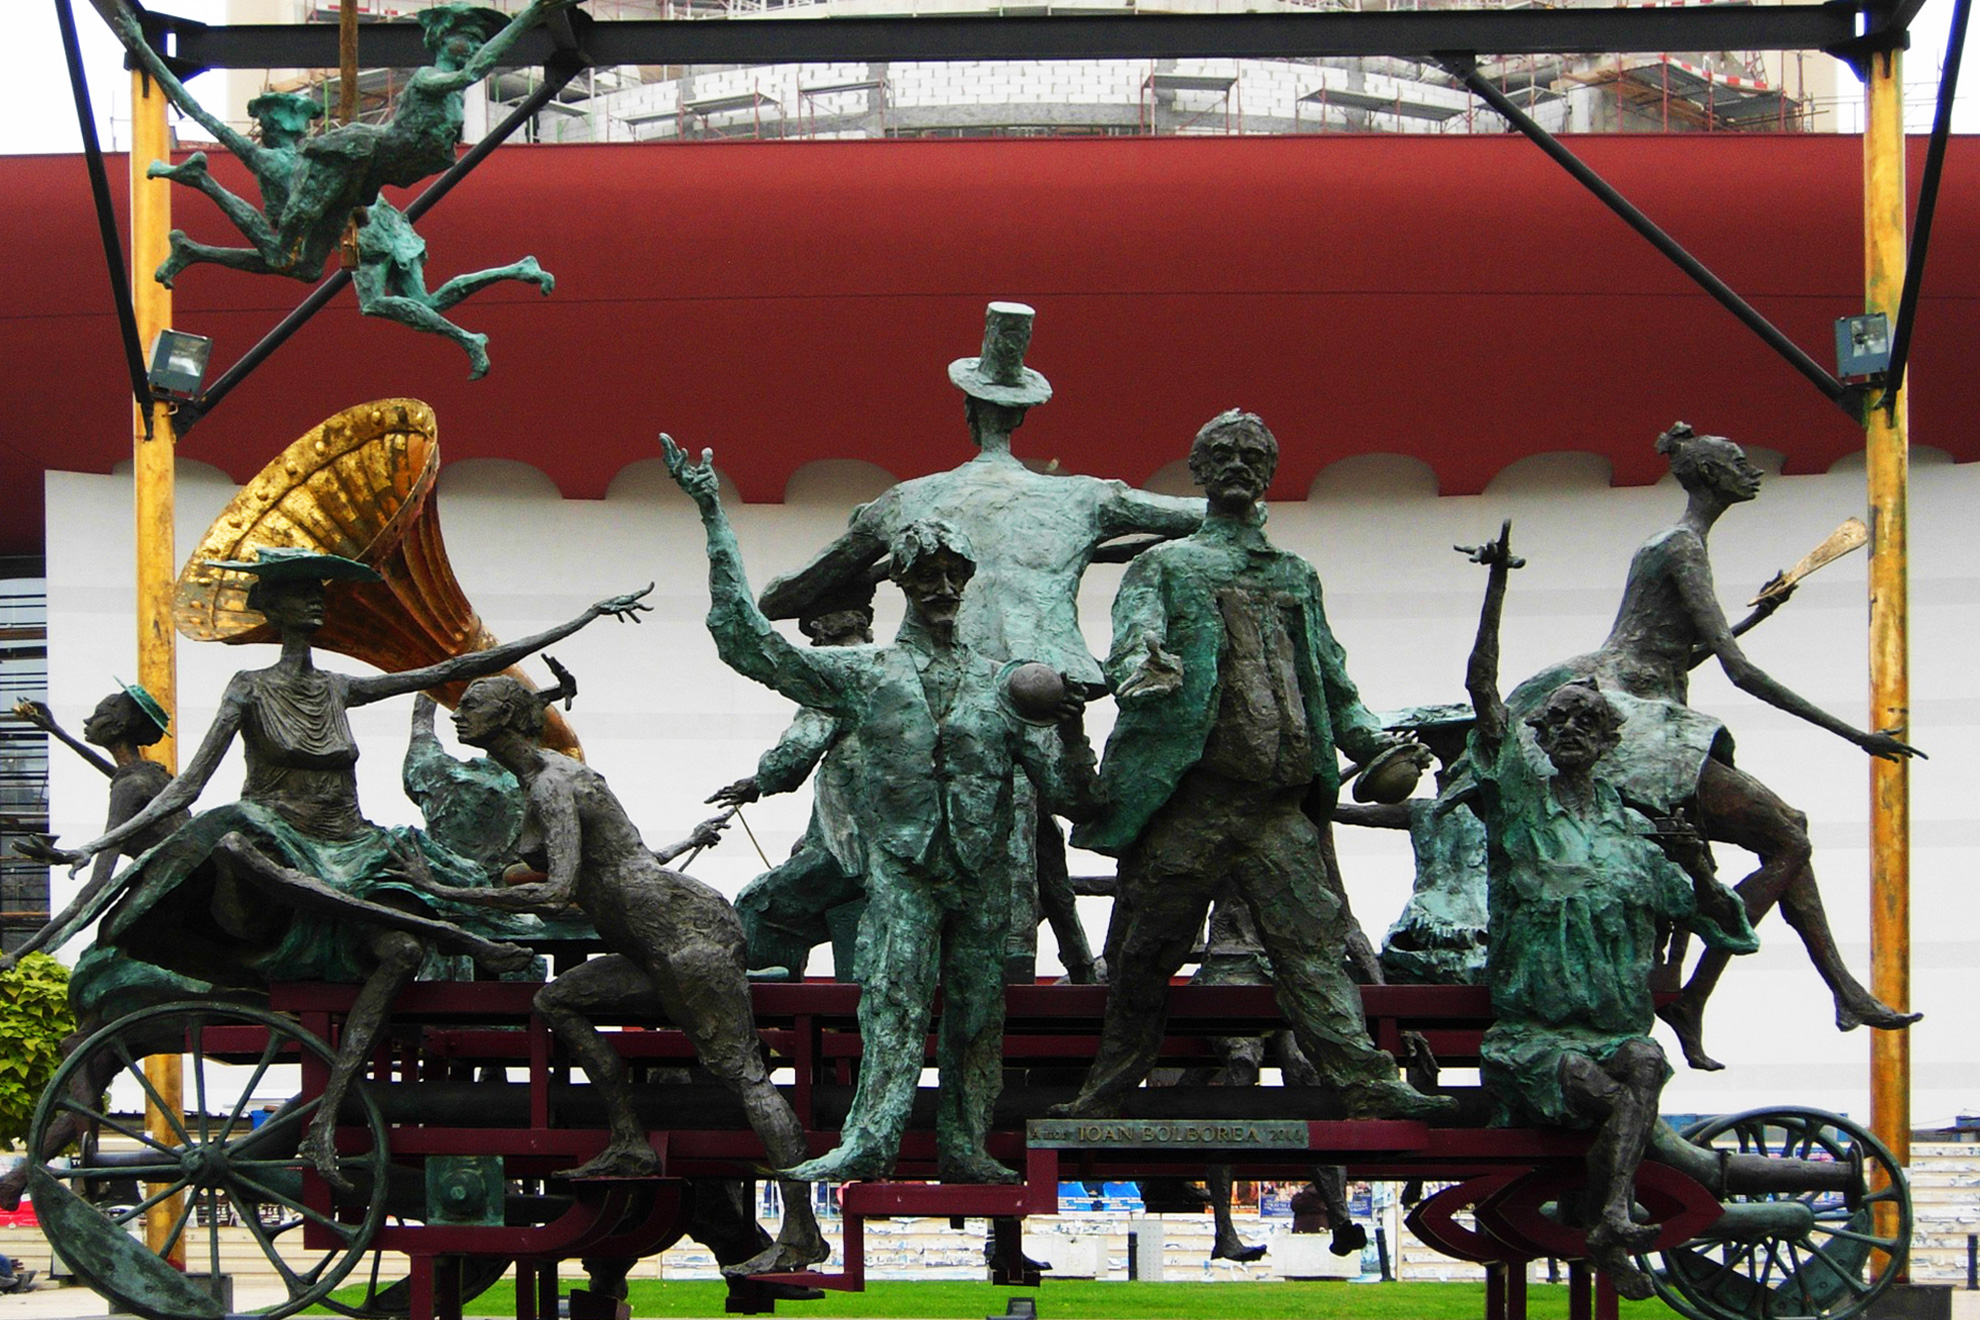 Предколеден СПА уикенд - Термите на Букурещ - Монументалния скулптурен ансамбъл - &bdquo;Каруцата с клоуните&ldquo;, известна и като&nbsp;&bdquo;Караджалеана&ldquo;, разположена пред&nbsp;Националния театър &bdquo;Йон Лука Караджале&ldquo;, Букурещ, Румъния - Caragealiana sculpture in front of National Theatre, Bucharest, Romania